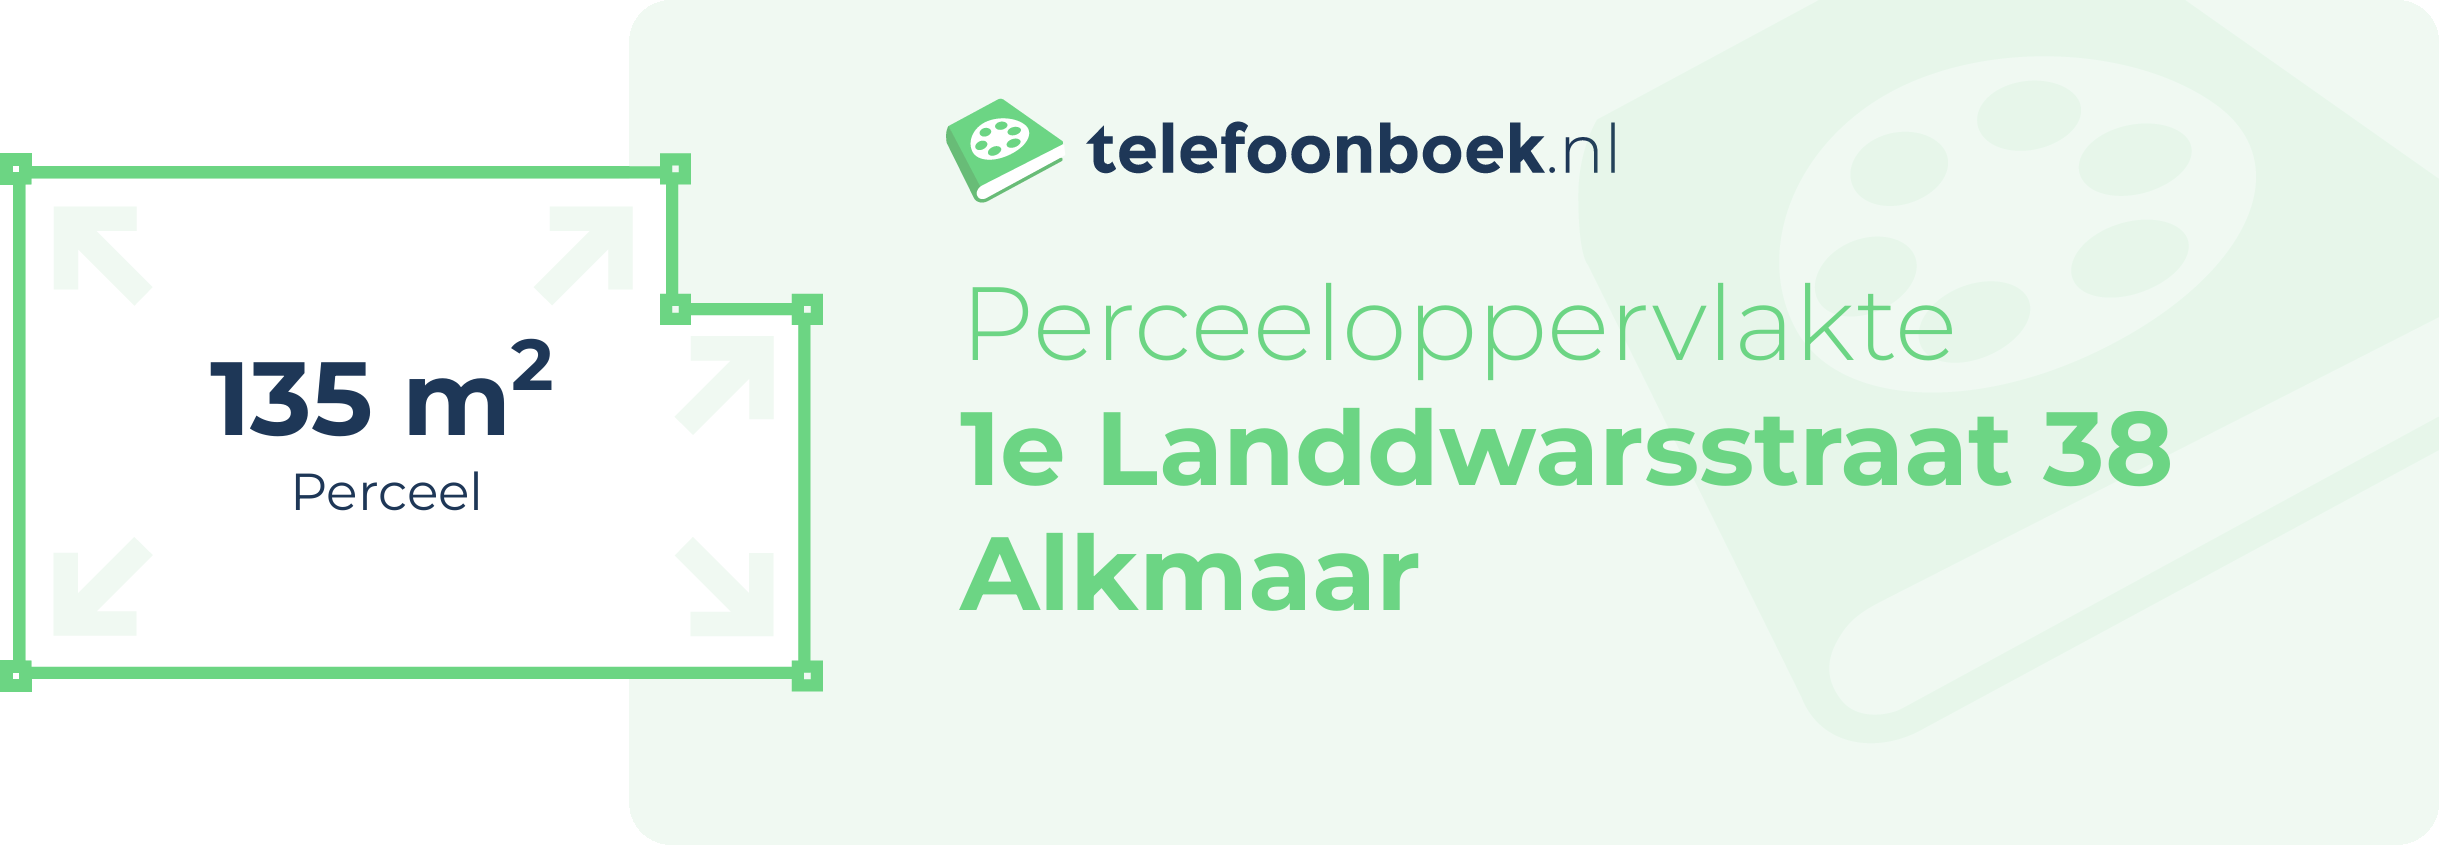 Perceeloppervlakte 1e Landdwarsstraat 38 Alkmaar